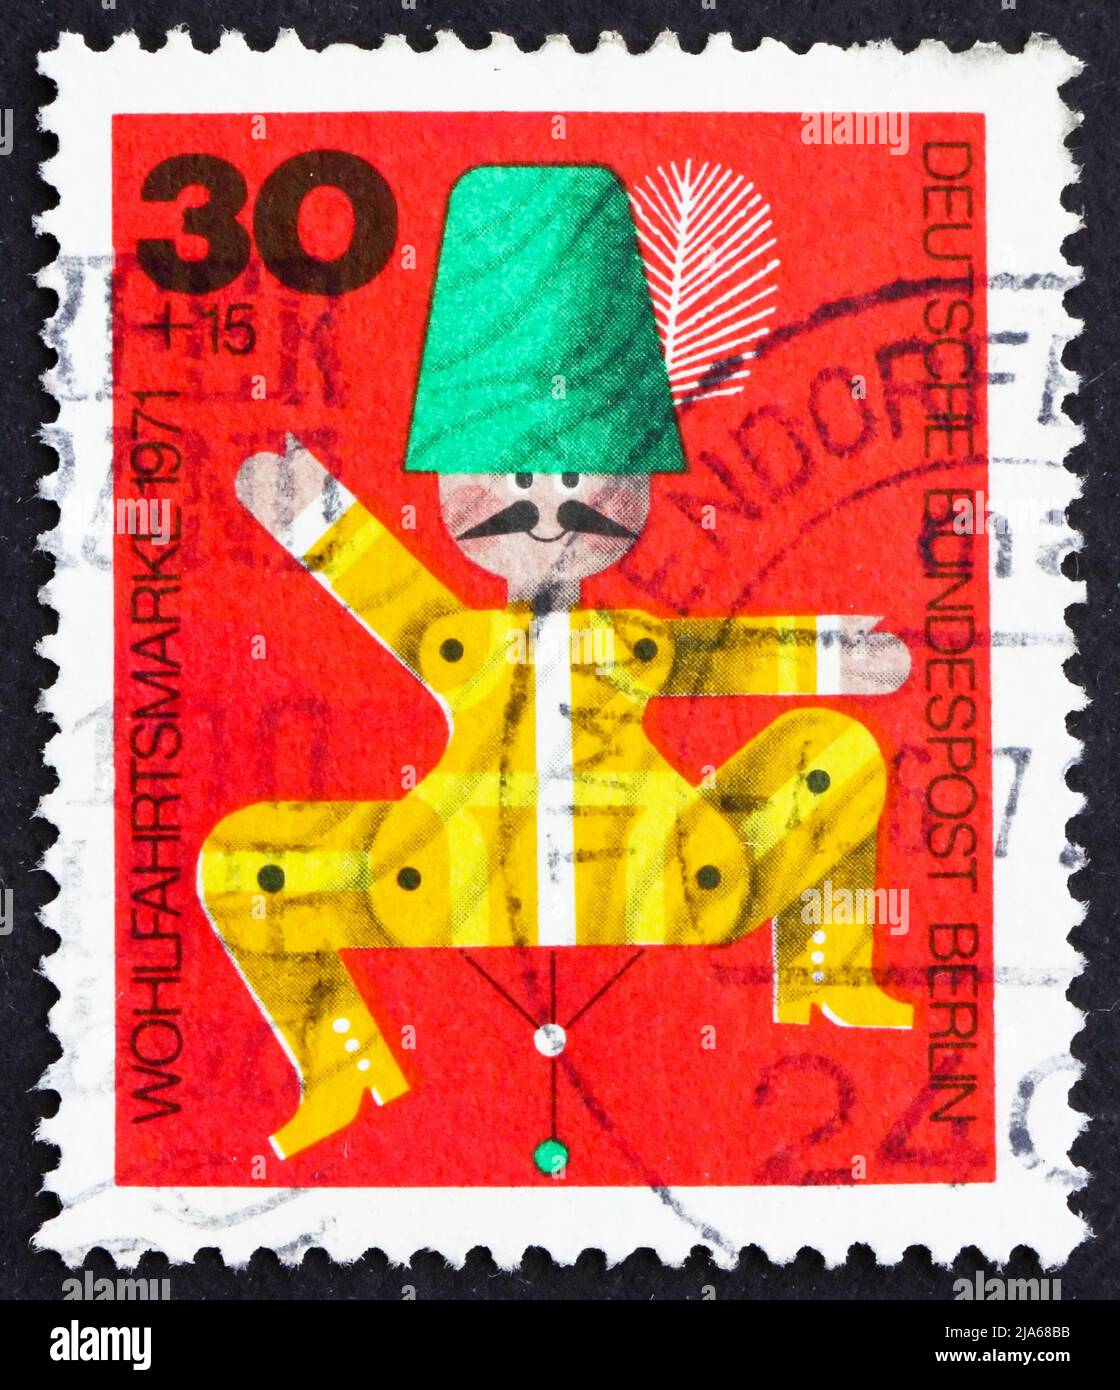 ALLEMAGNE - VERS 1971: Un timbre imprimé en Allemagne, Berlin montre Jumping Jack, Wooden Toy, vers 1971 Banque D'Images